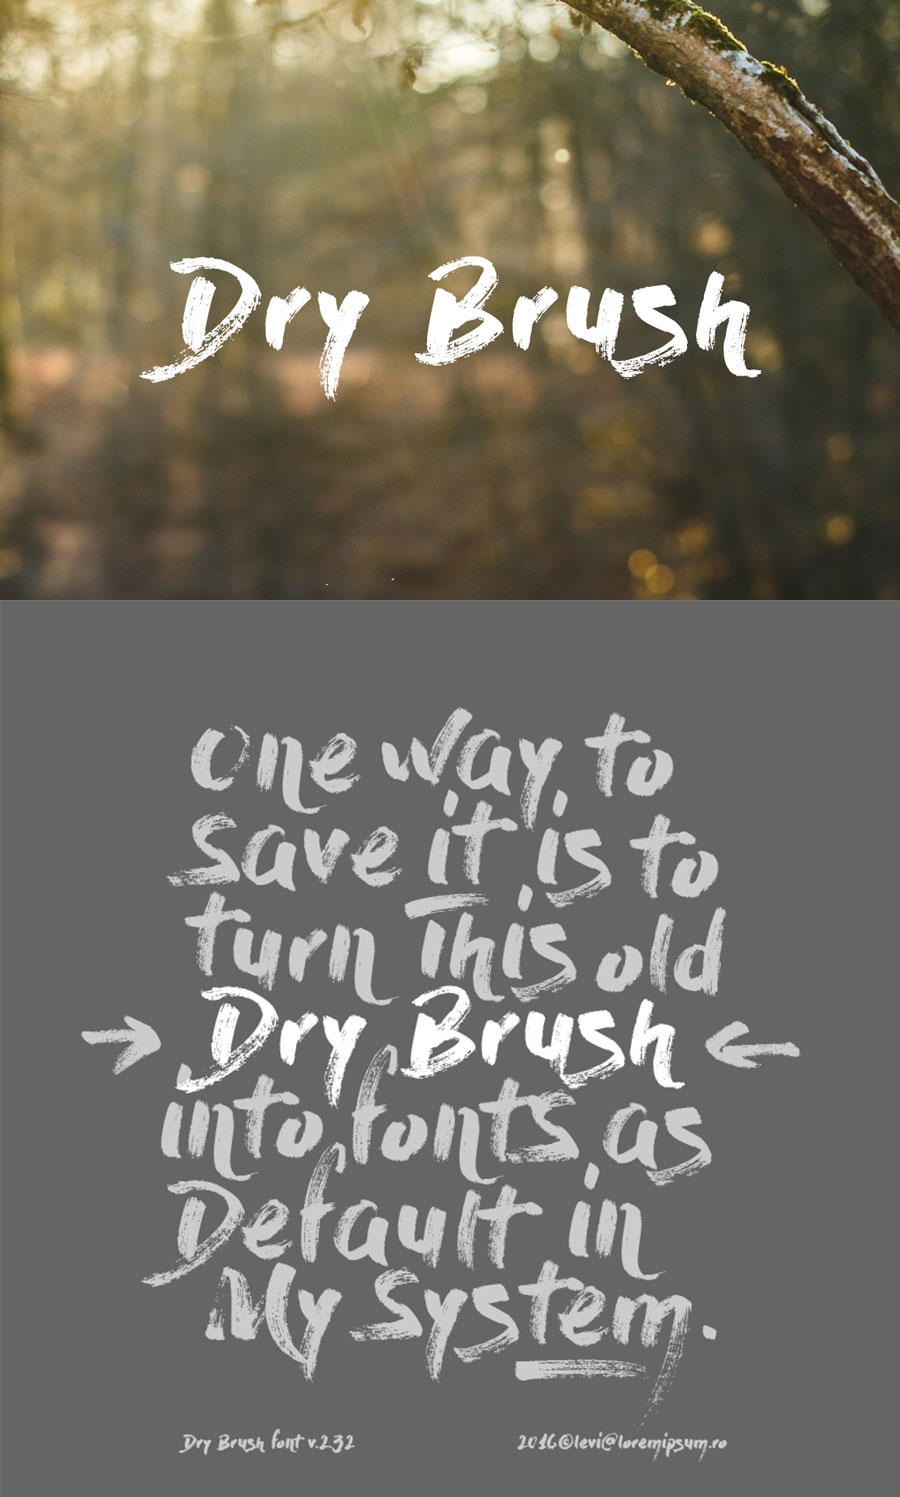 DryBrush